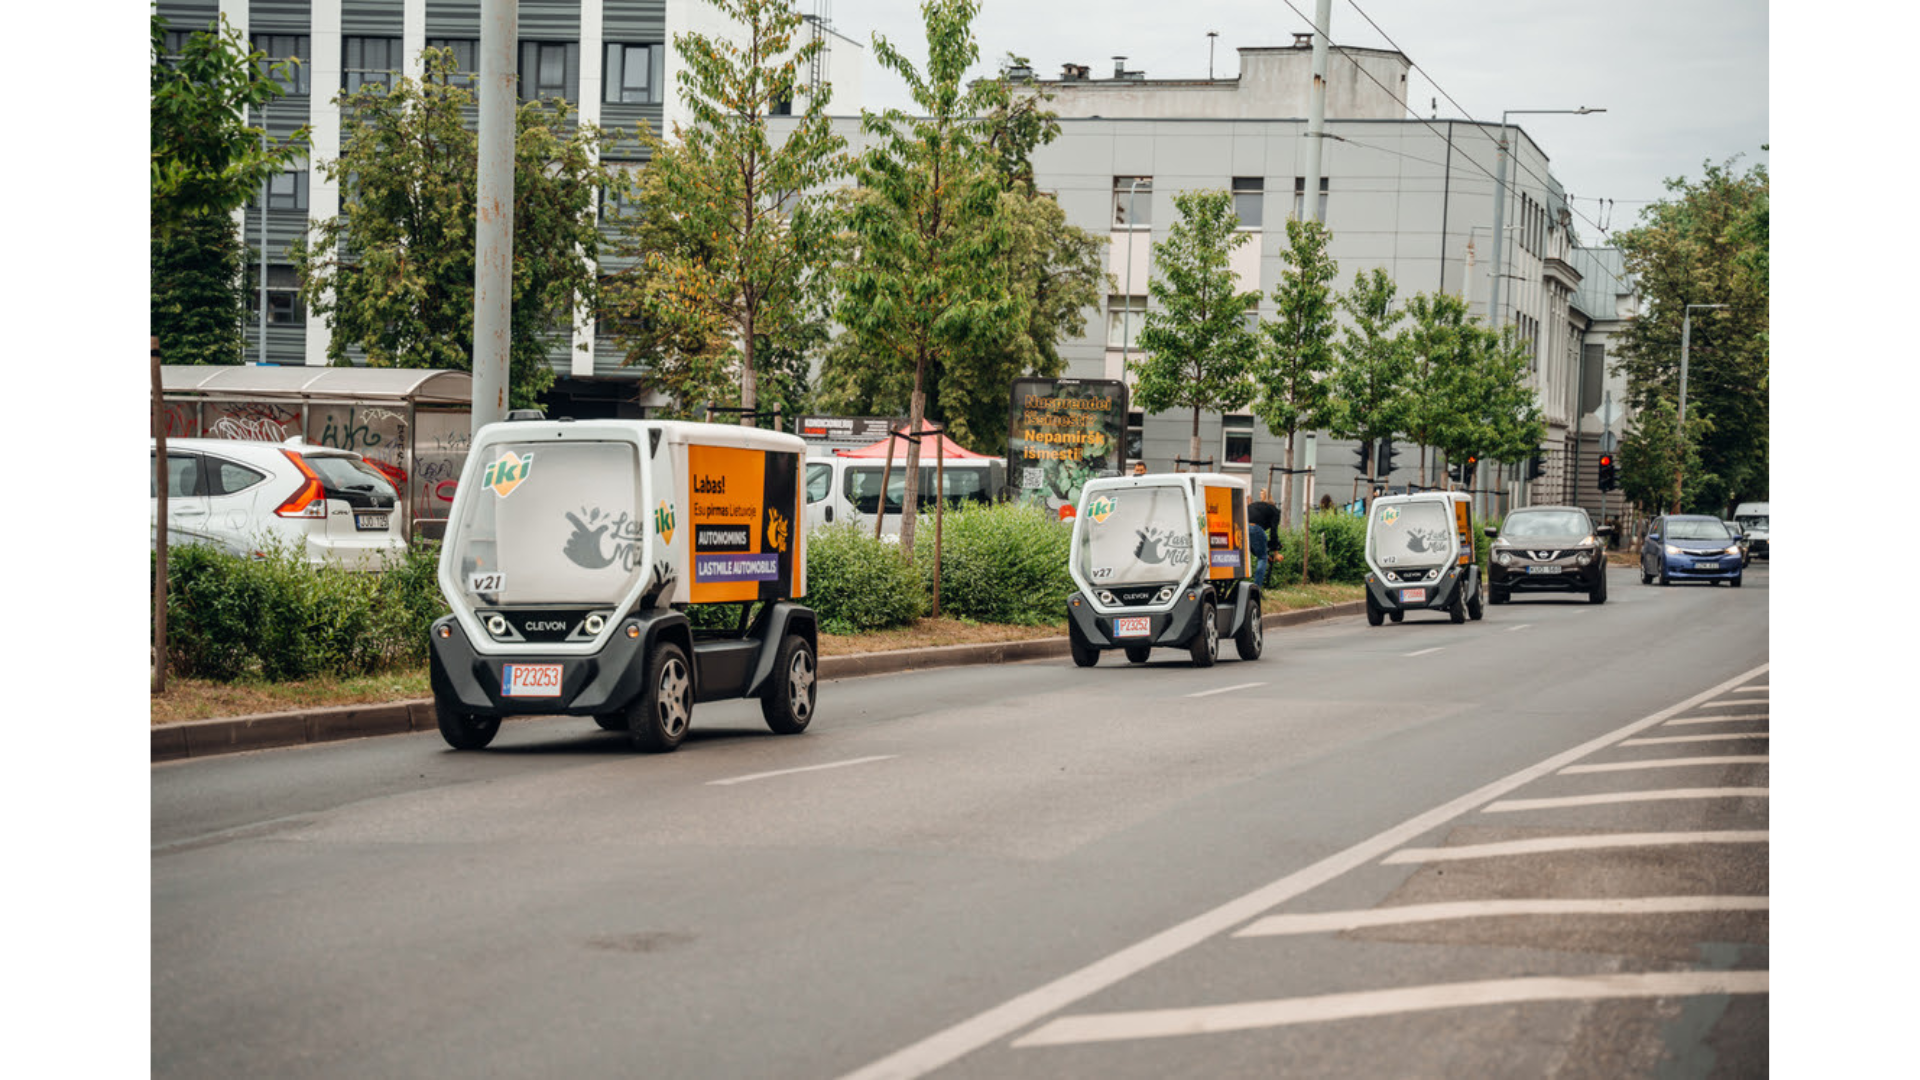 Autonomus Vehicles in Vilnius